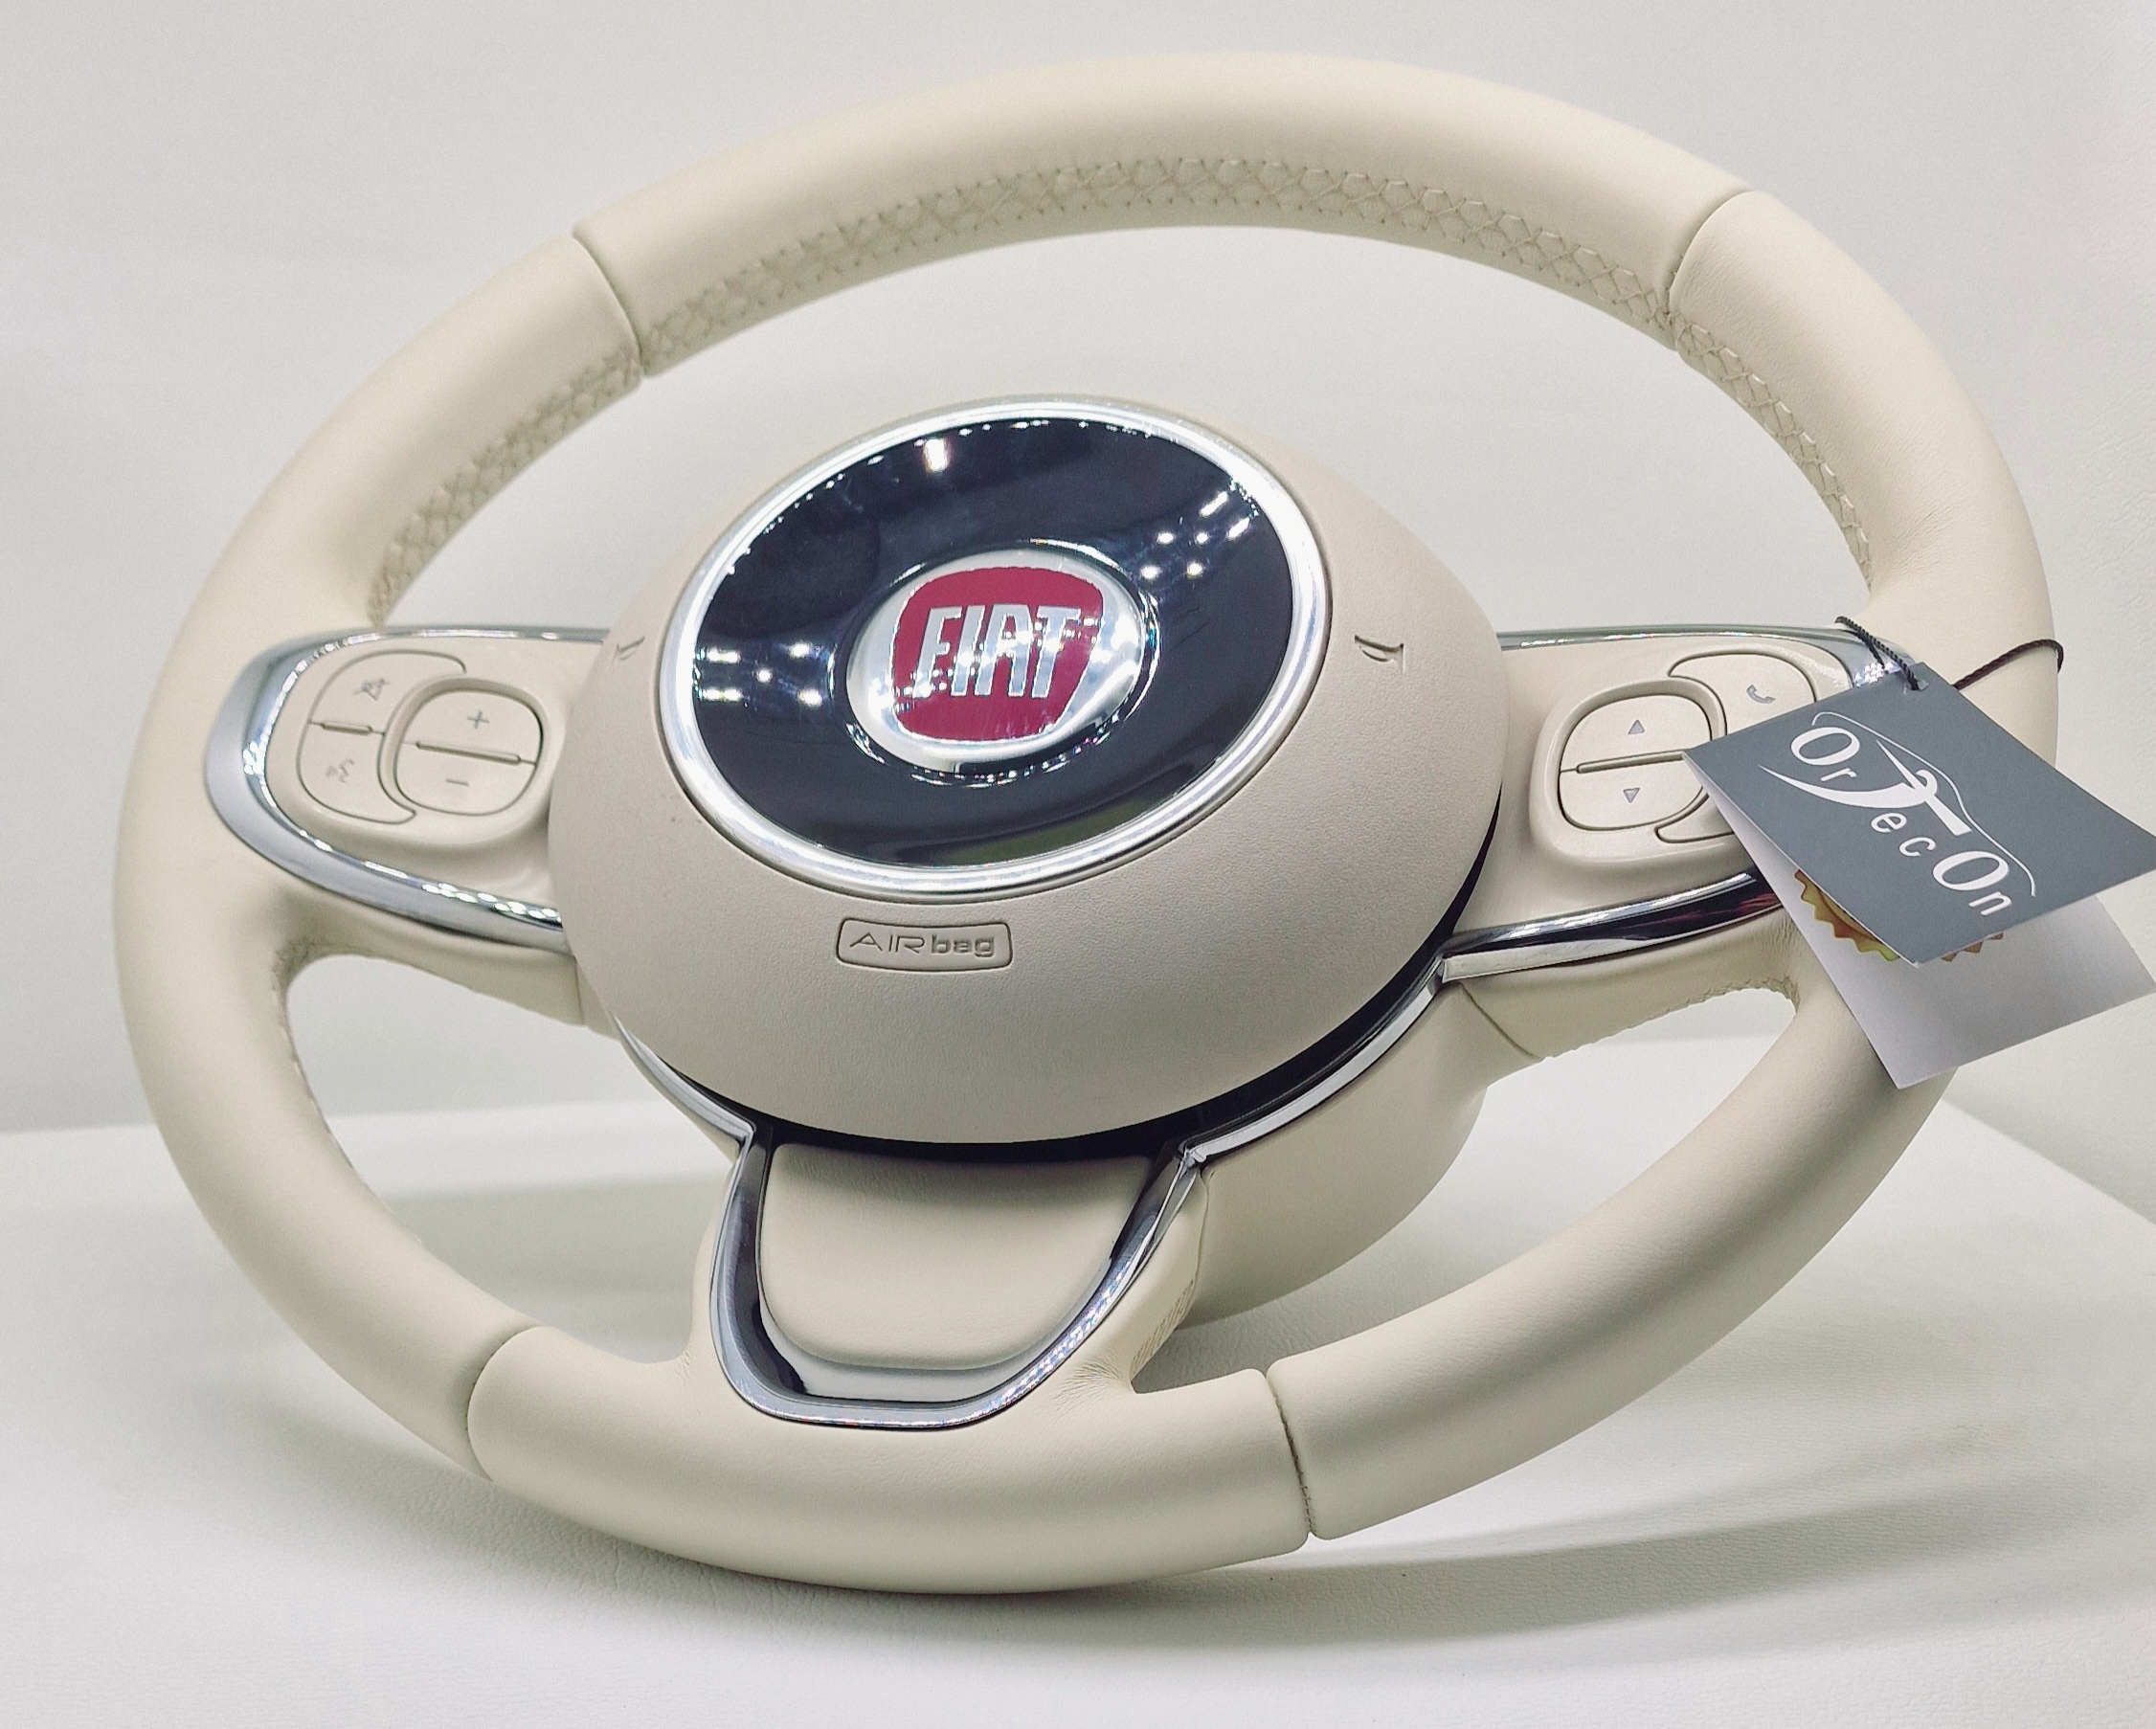 Tapizado volante Fiat 500 2015-2021 _ 500C 2016-2021, en Exclusiva